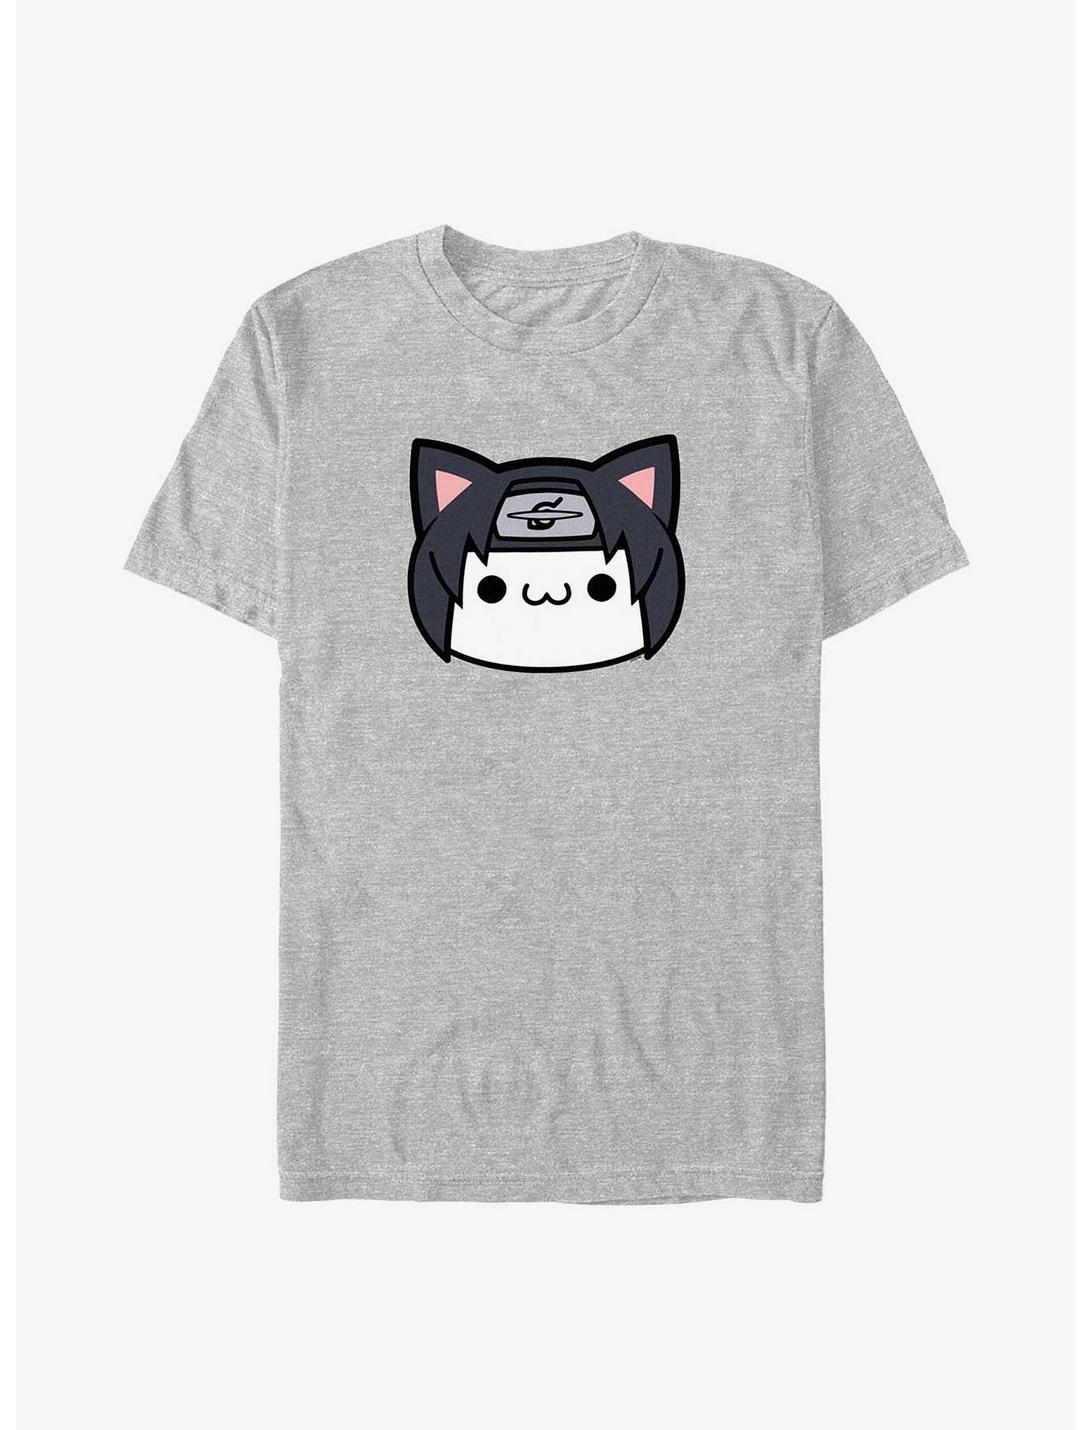 Naruto Itachi Cat Face T-Shirt, ATH HTR, hi-res